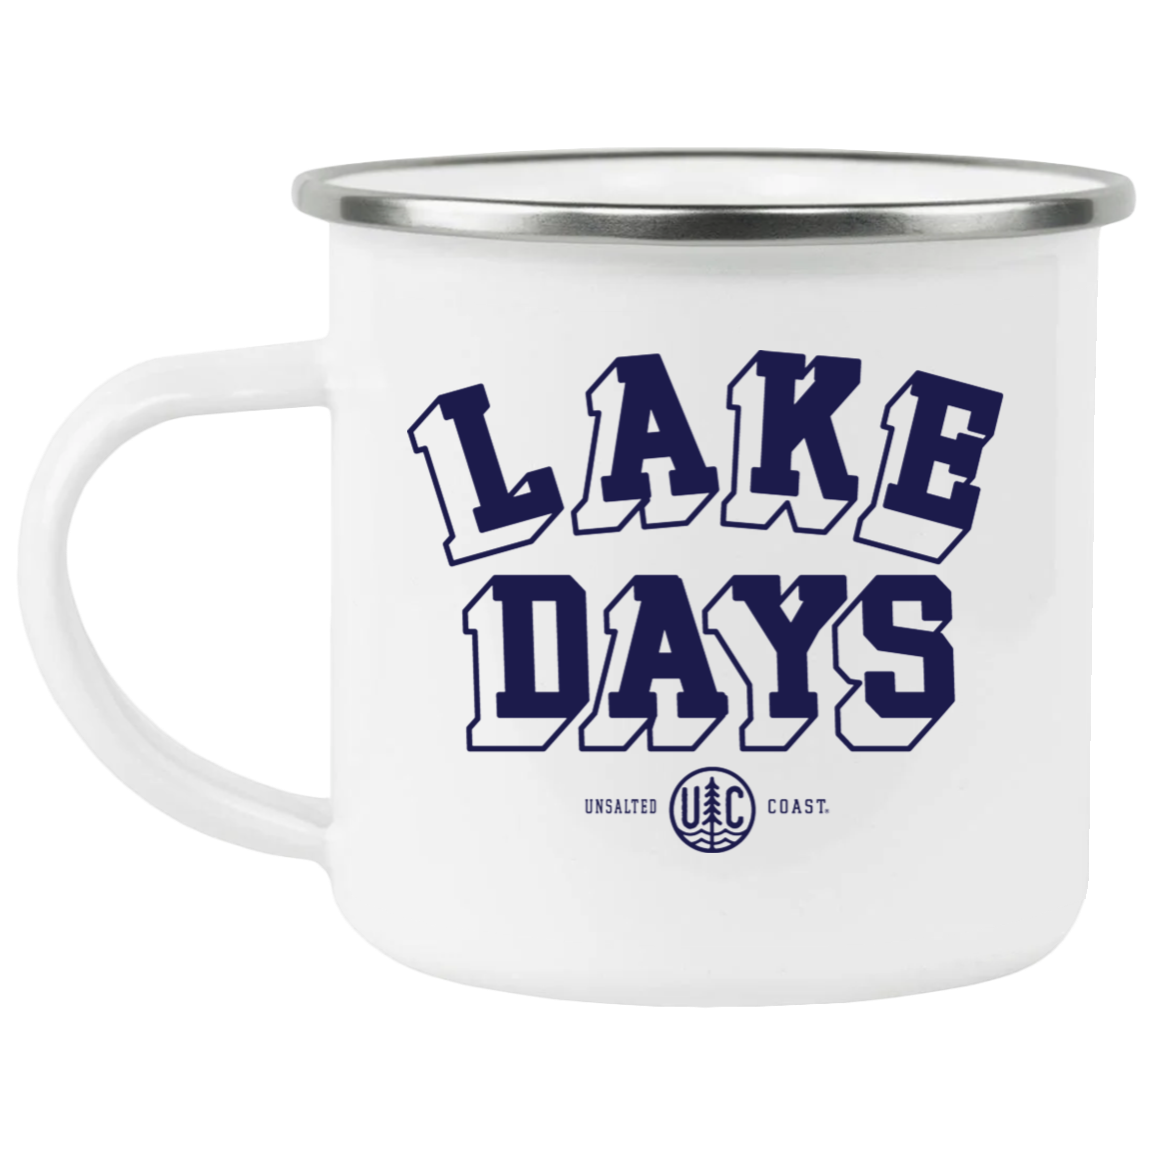 Lake Days Navy  Enamel Camping Mug